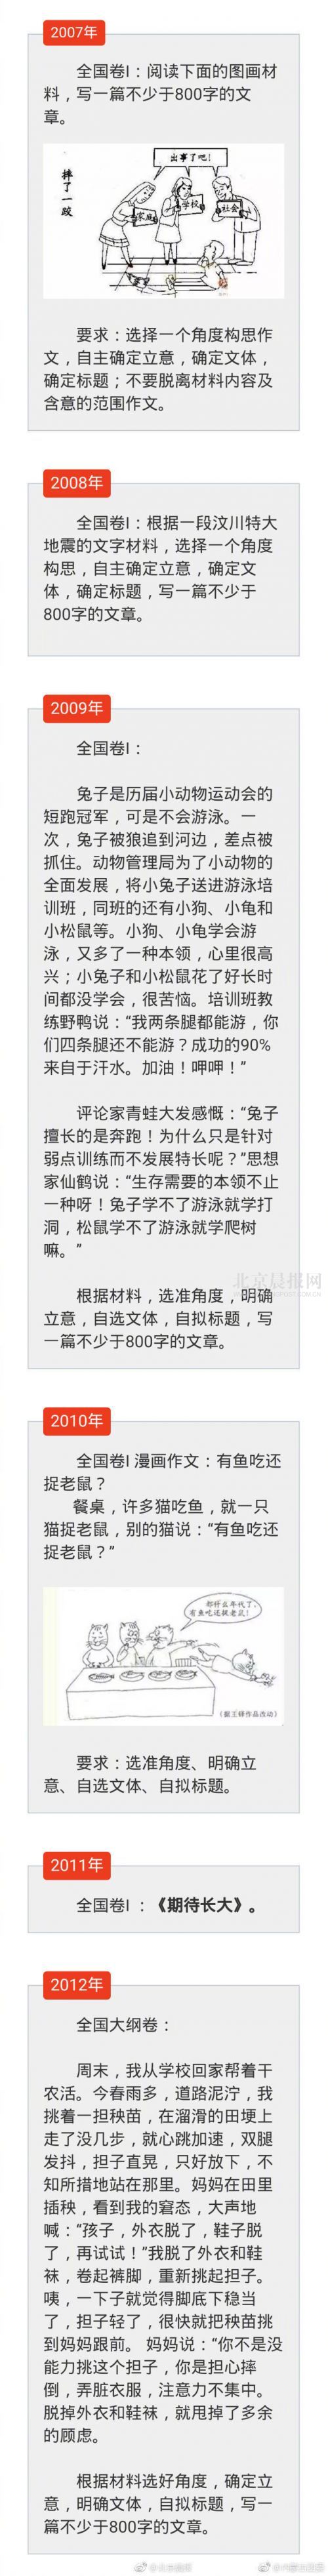 2017年北京市高考作文题出炉